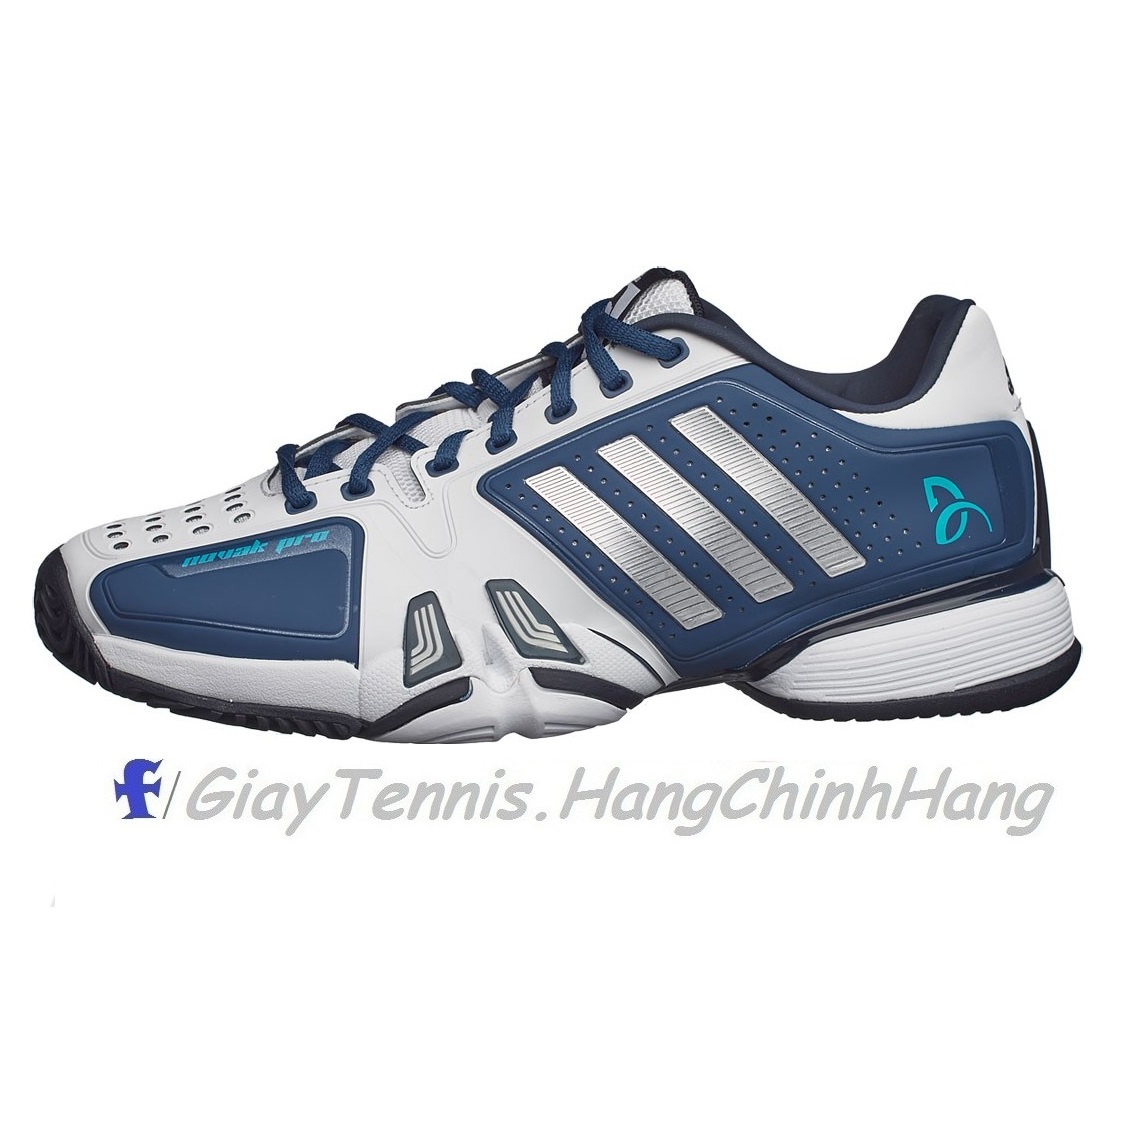 Giày Tennis Adidas Novak Pro 2016 Blue/White Chính Hãng | Trang Nguyên Sport